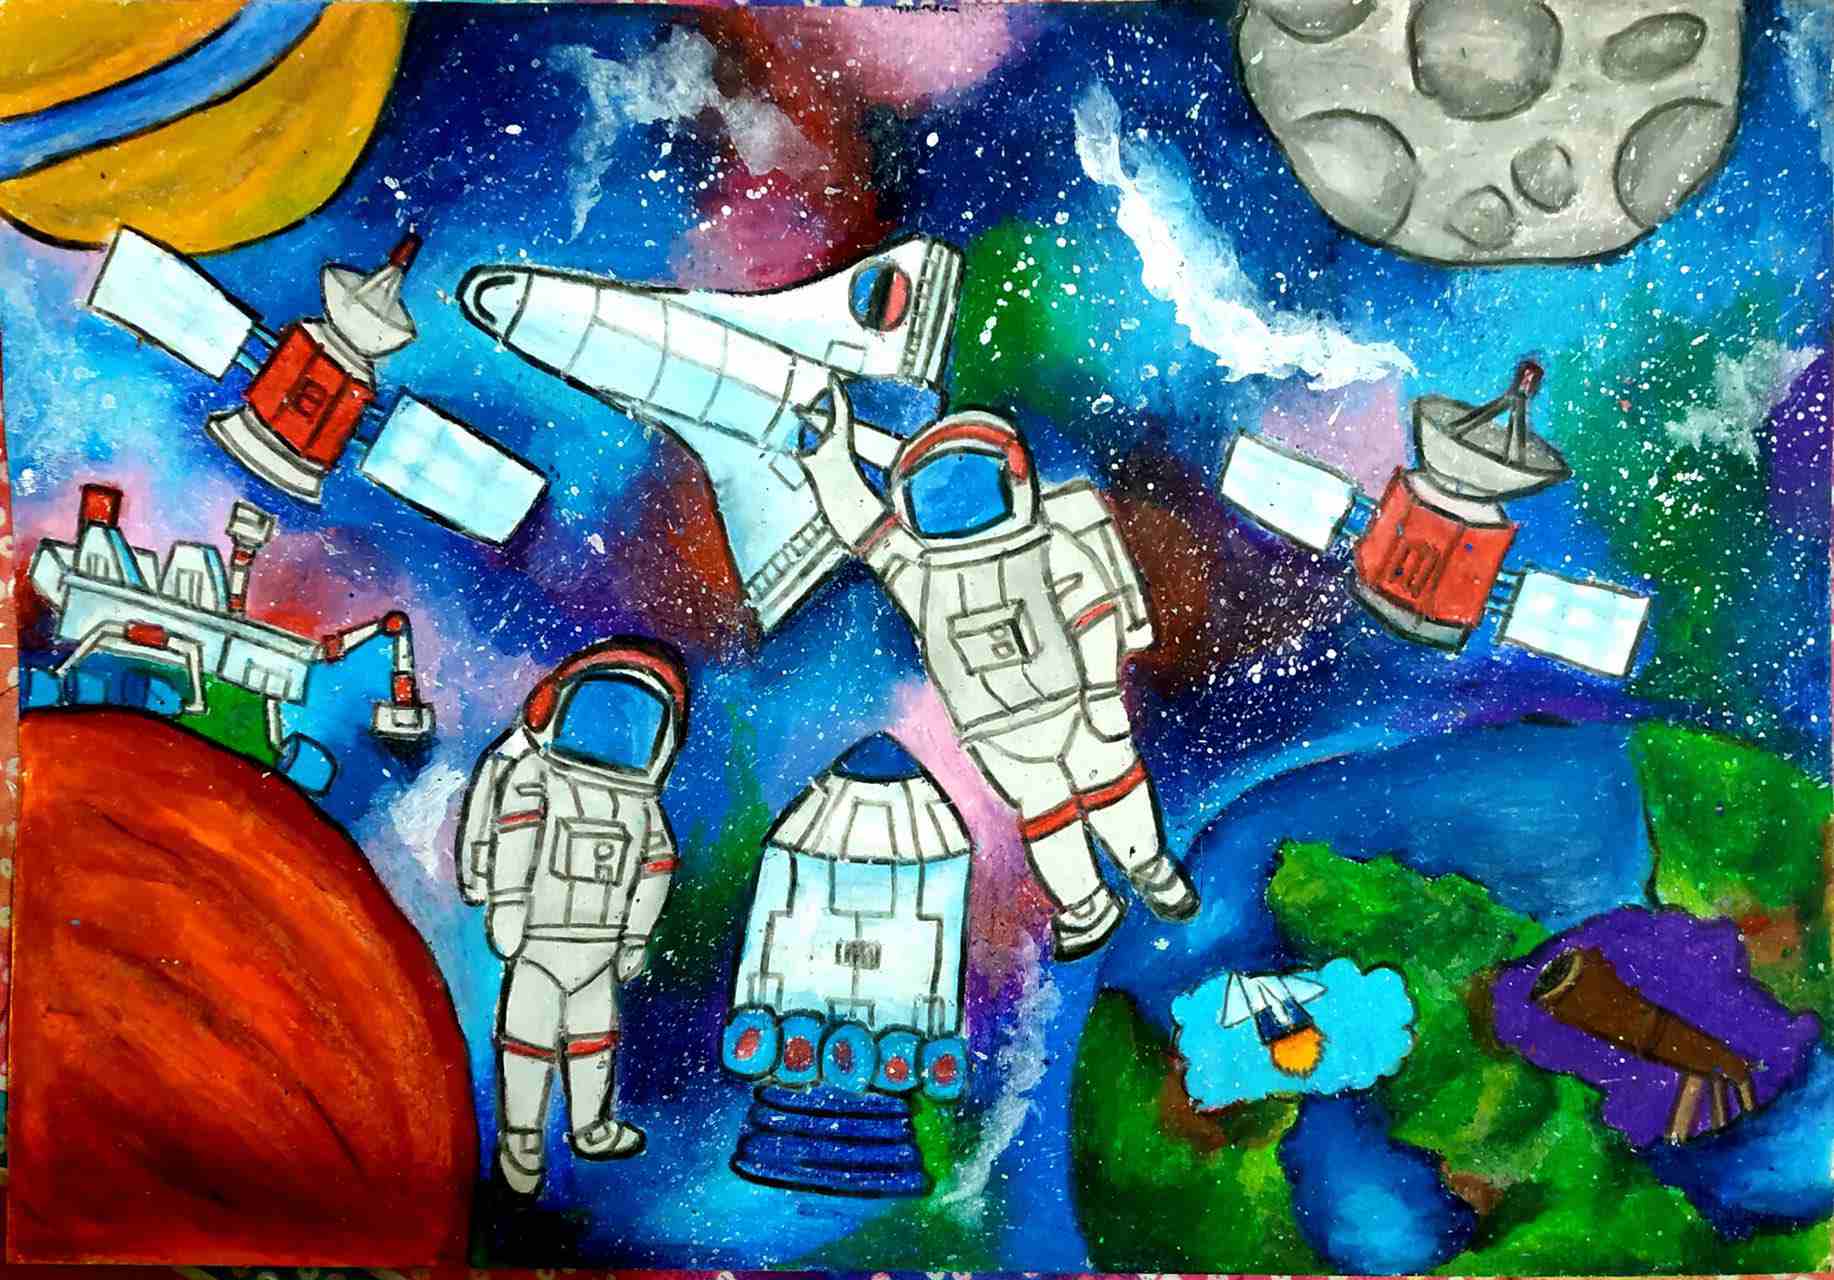 航天日绘画作品《太空航程》,孟加拉国Saadat Ibrahim